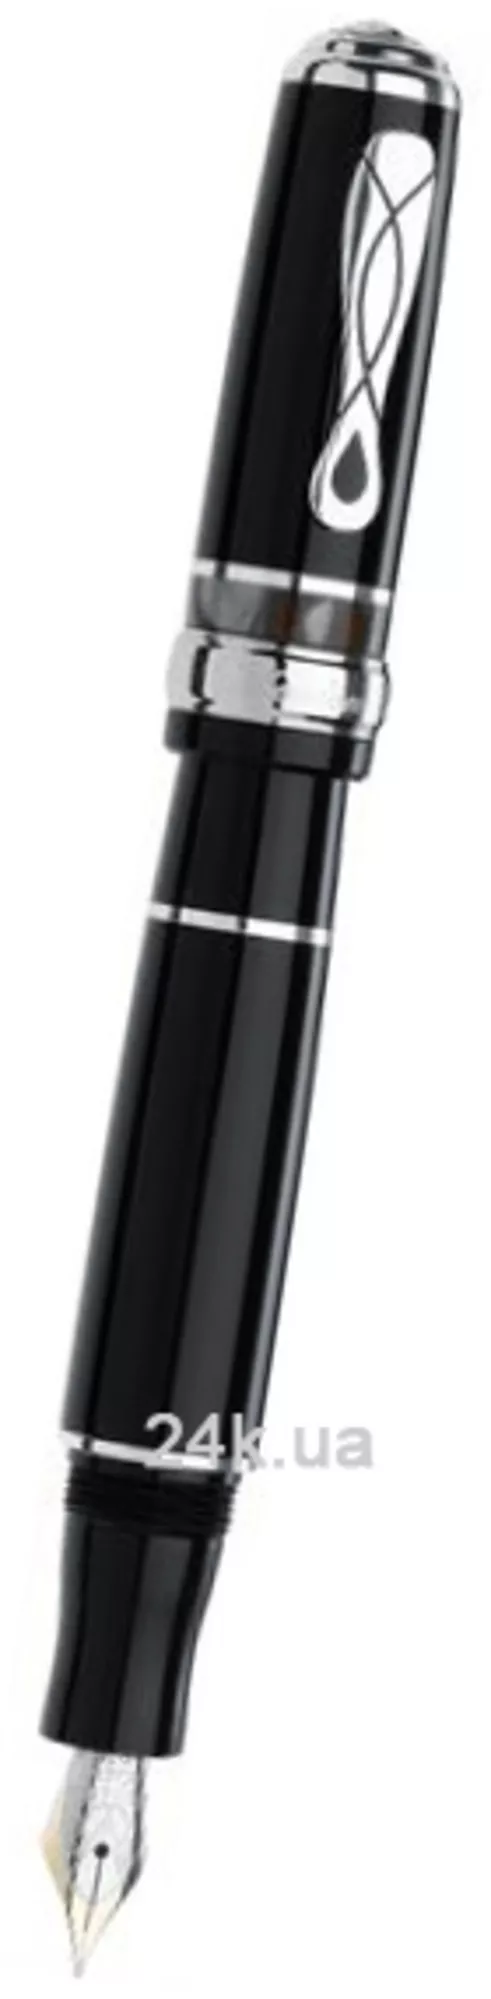 Ручка Marlen M10.191 FP Black